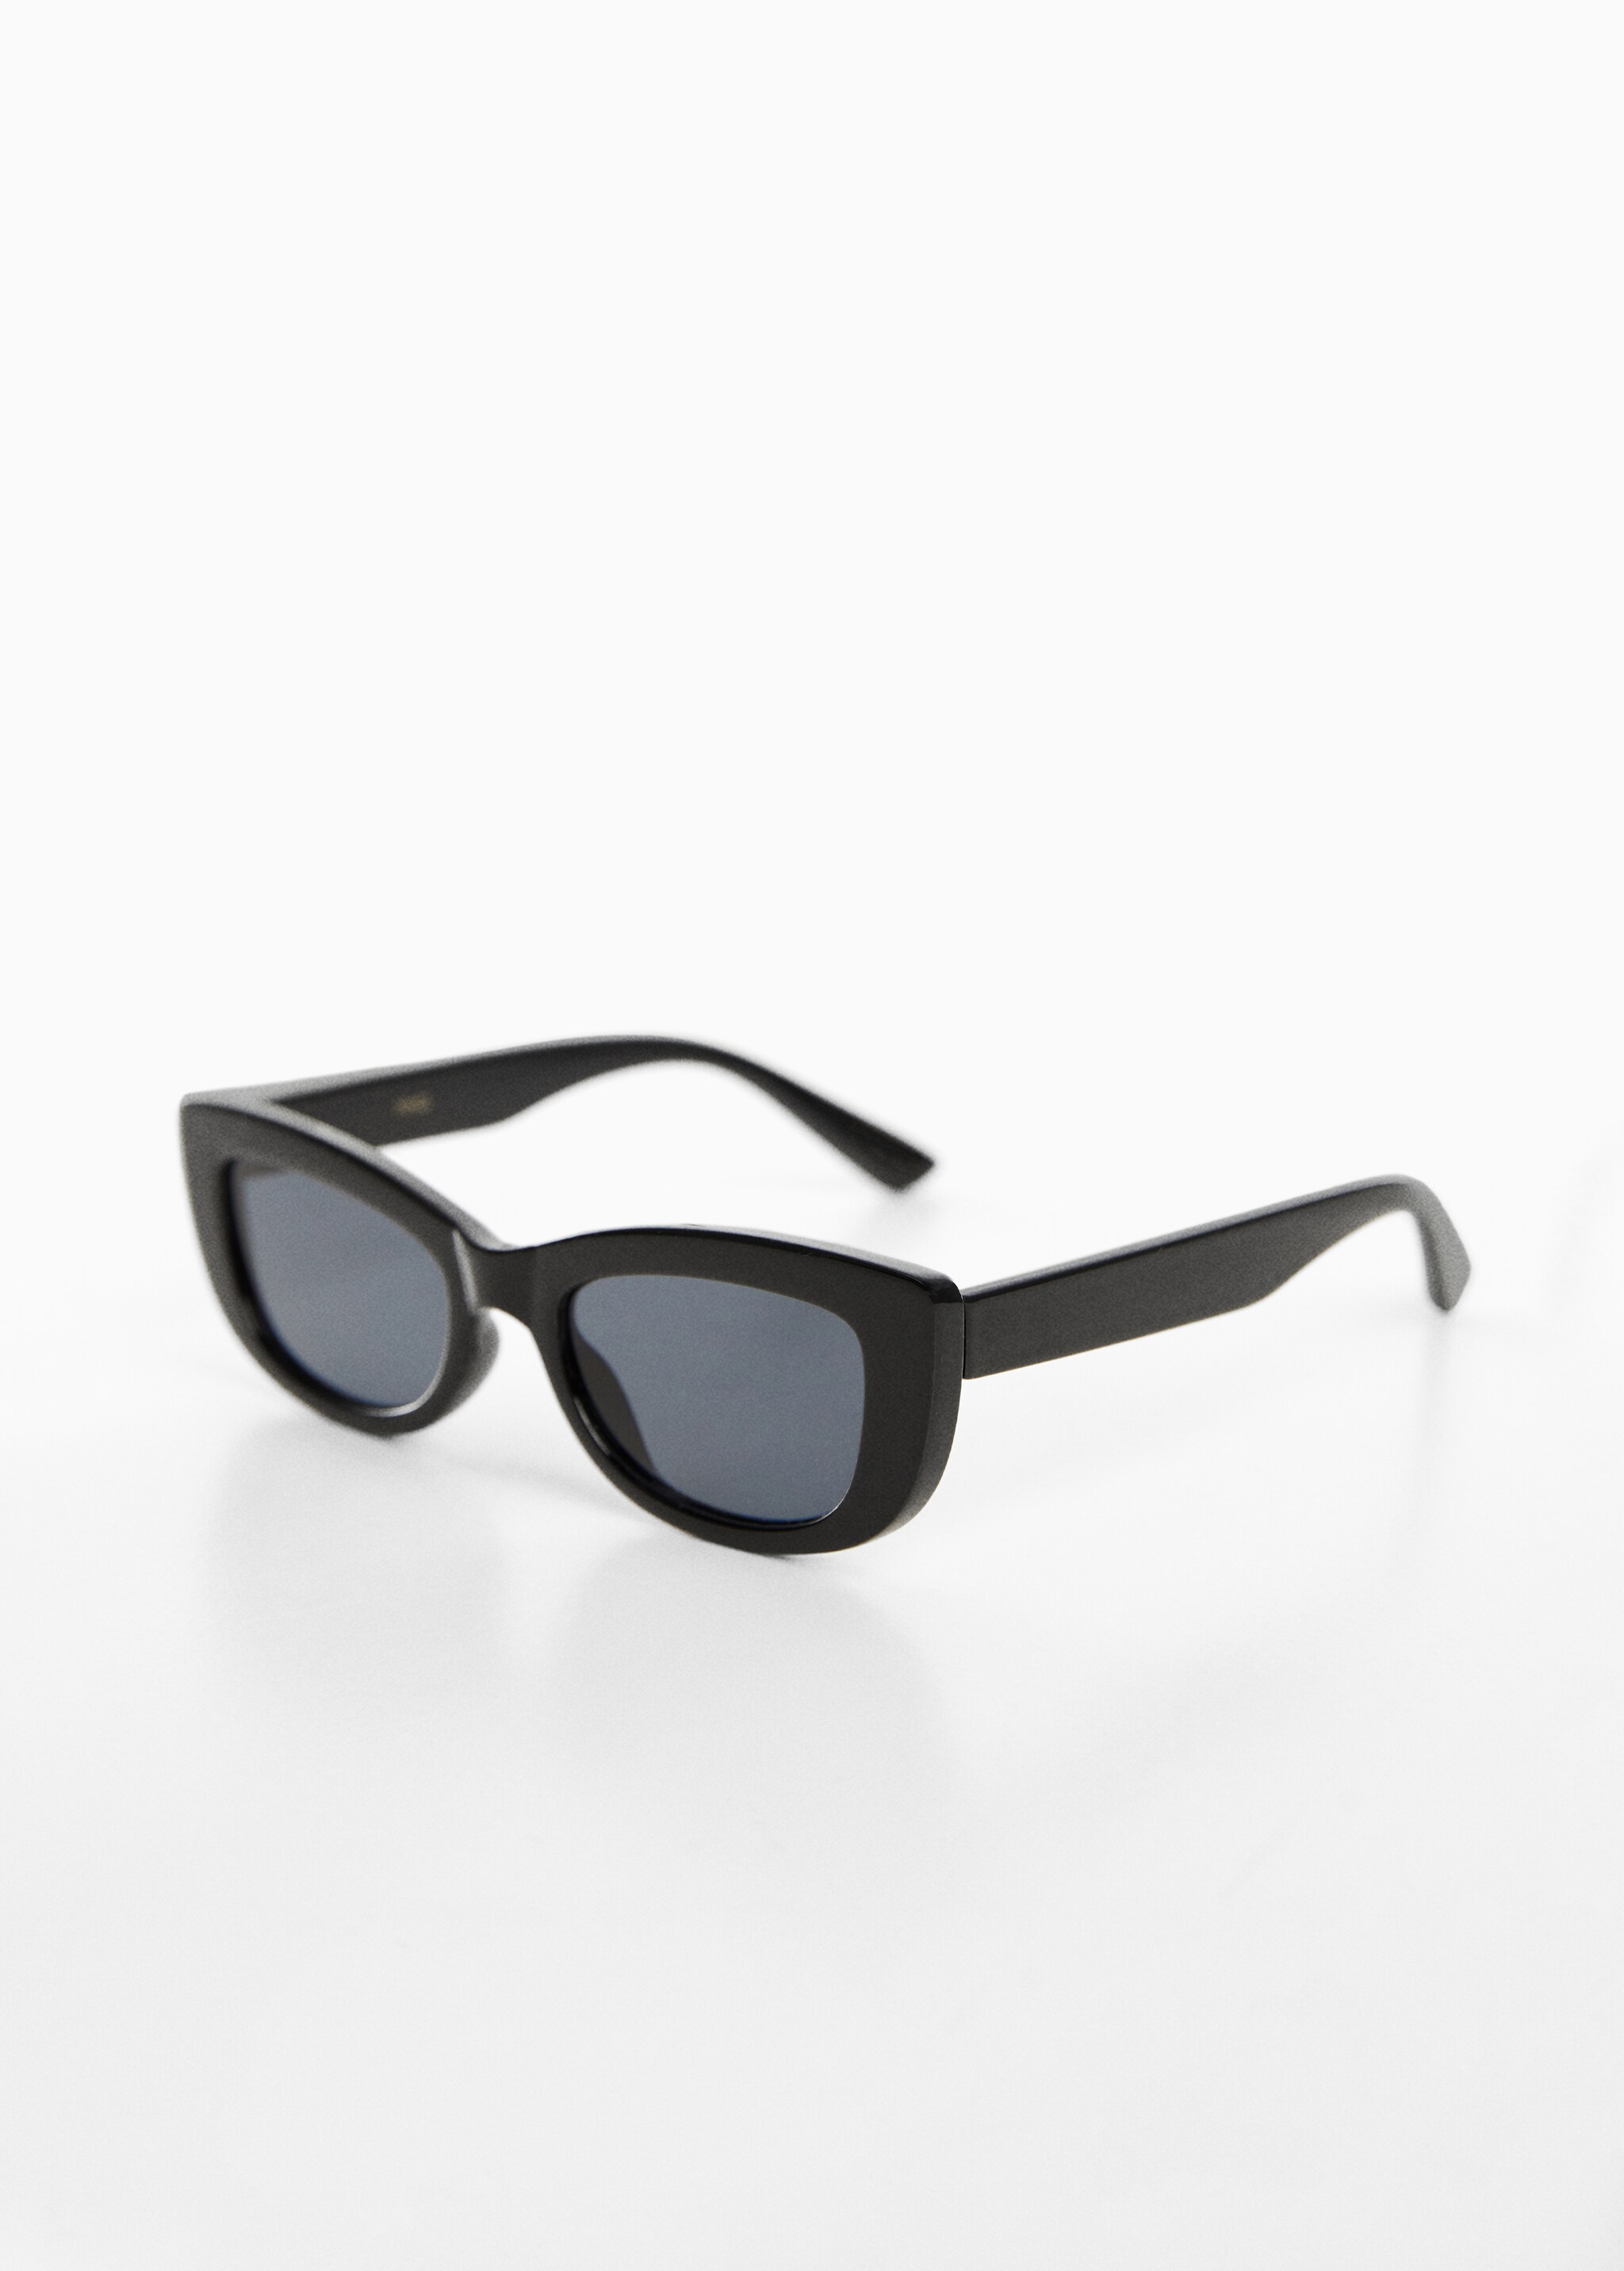 Солнцезащитные очки в стиле ретро - Средний план